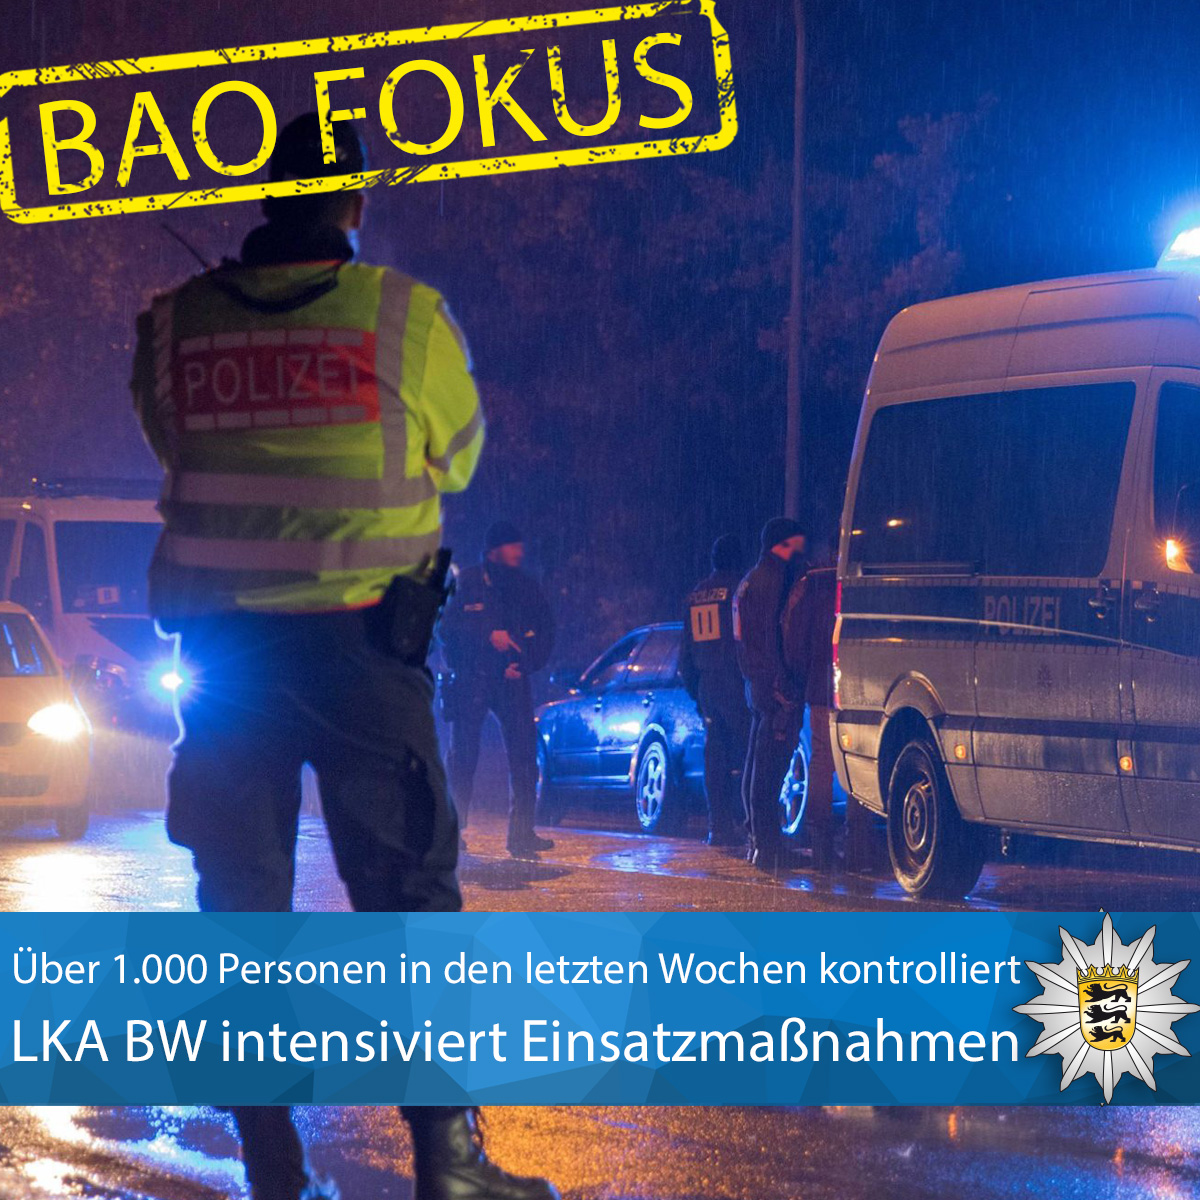 #BAOFOKUS - Bereits 64 Personen in Haft ⚠️ Seit Februar haben wir unsere Einsatzmaßnahmen gegen die beiden rivalisierenden Gruppen rund um Stuttgart weiter intensiviert. Schwerpunkt sind großangelegte Brennpunkteinsätze. Zur PM ▶️ t1p.de/l6l78 Euer #LKABW